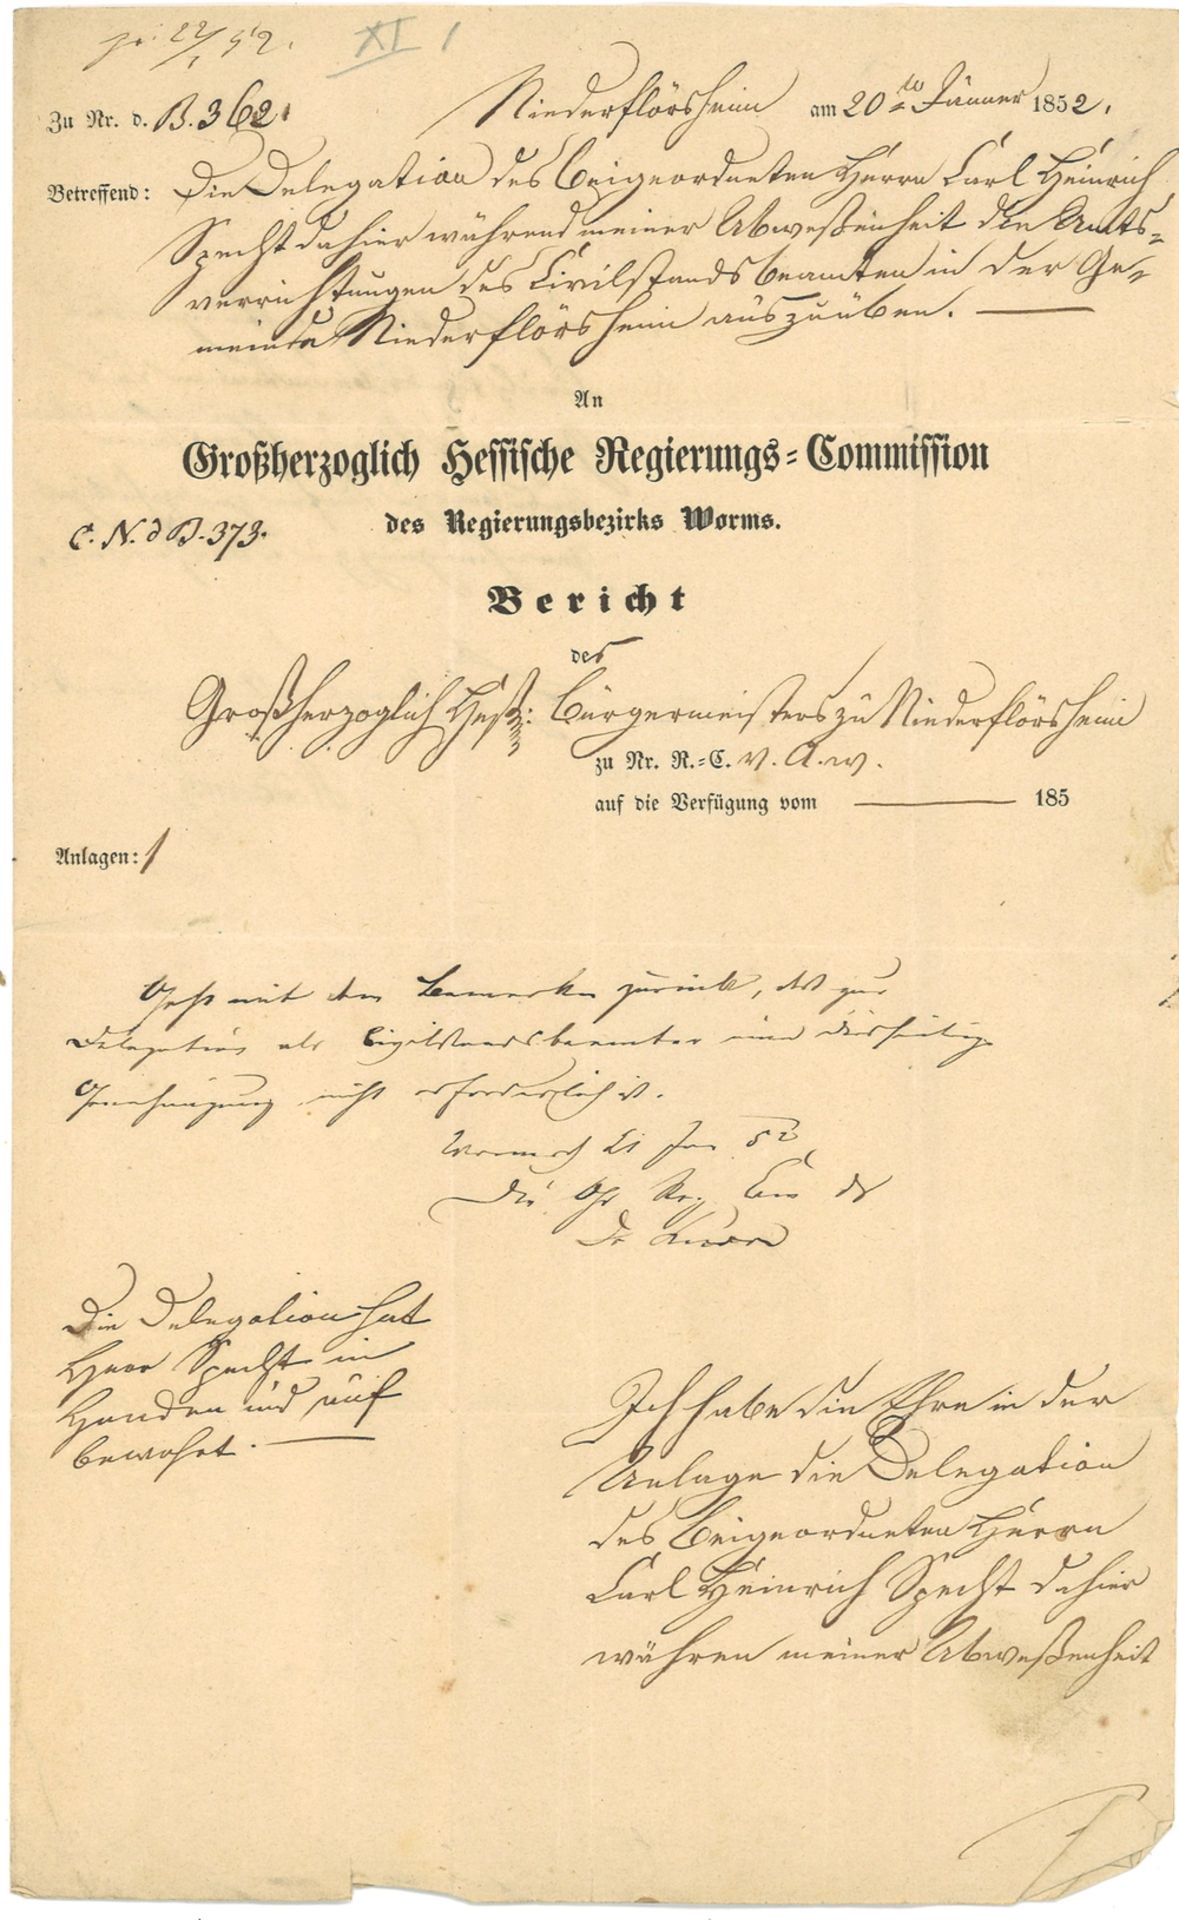 Faltbrief aus Nieder-Flörsheim, Januar 1852 "An die Großherzogliche Regierungskommission Worms",